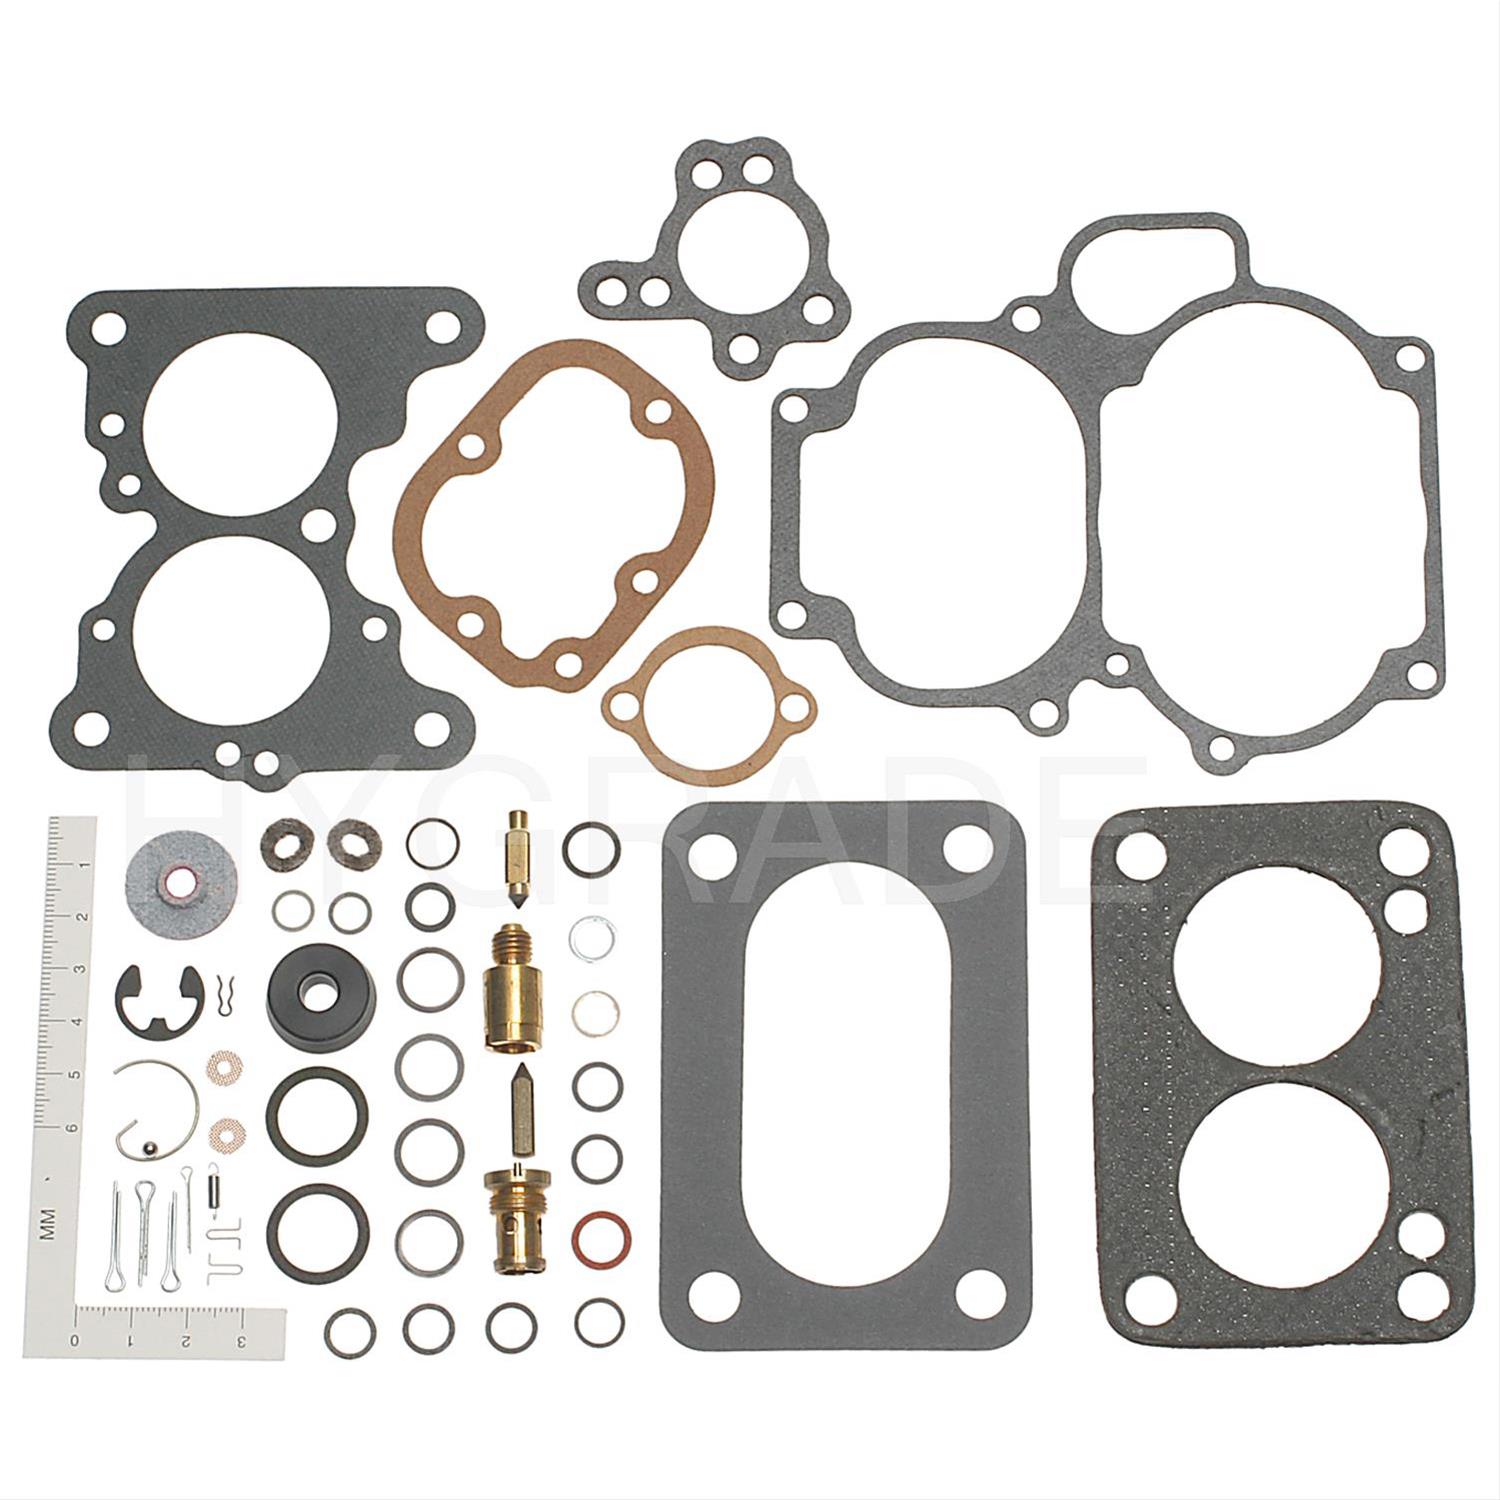 Standard Motor Products 569 Carburetor Kit